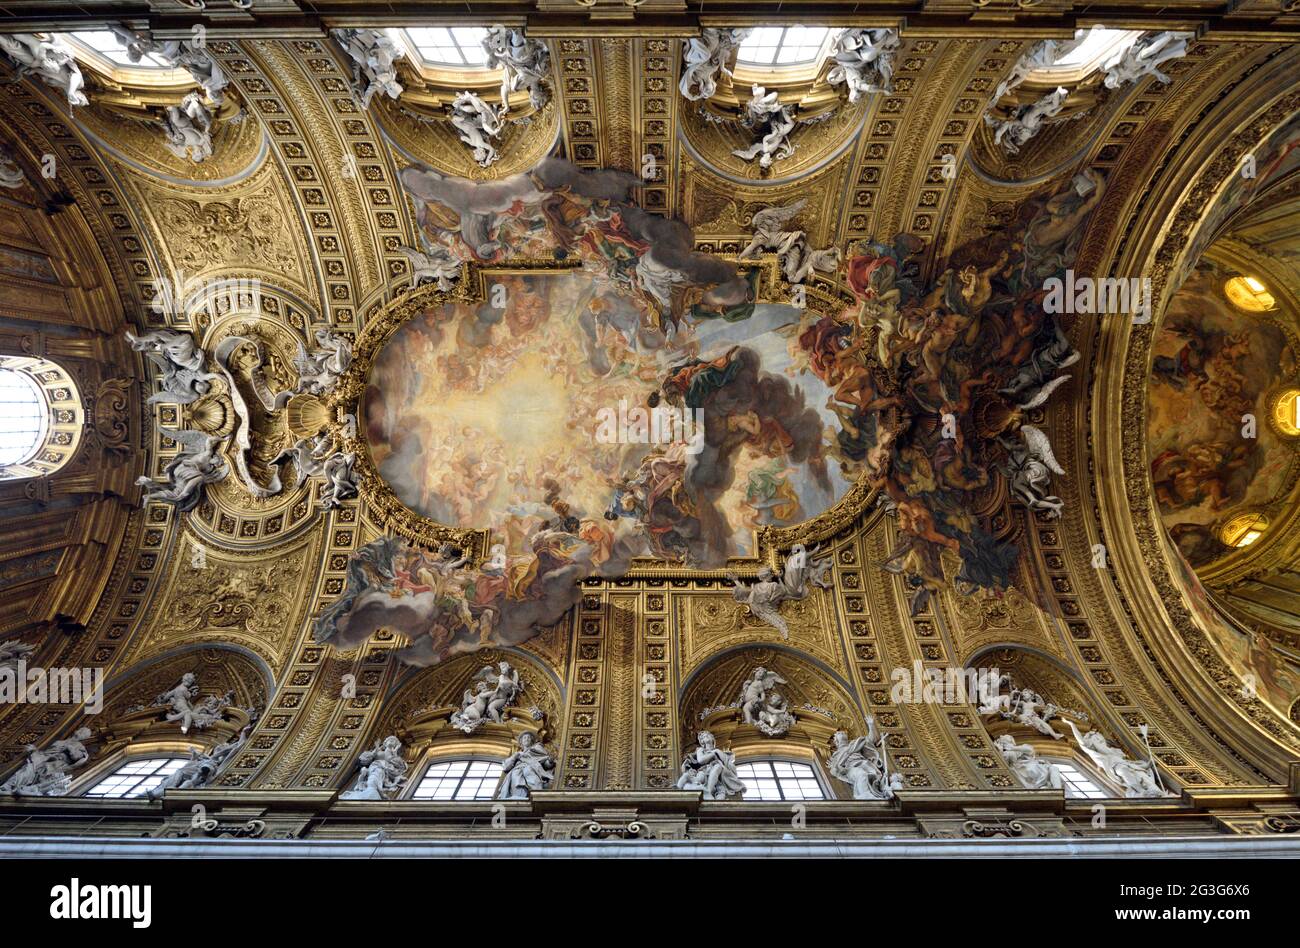 Italy, Rome, Chiesa del Gesù (church of Jesus), ceiling painting 'Trionfo del Nome di Gesù' by Giovanni Battista Gaulli, also known as Baciccio Stock Photo